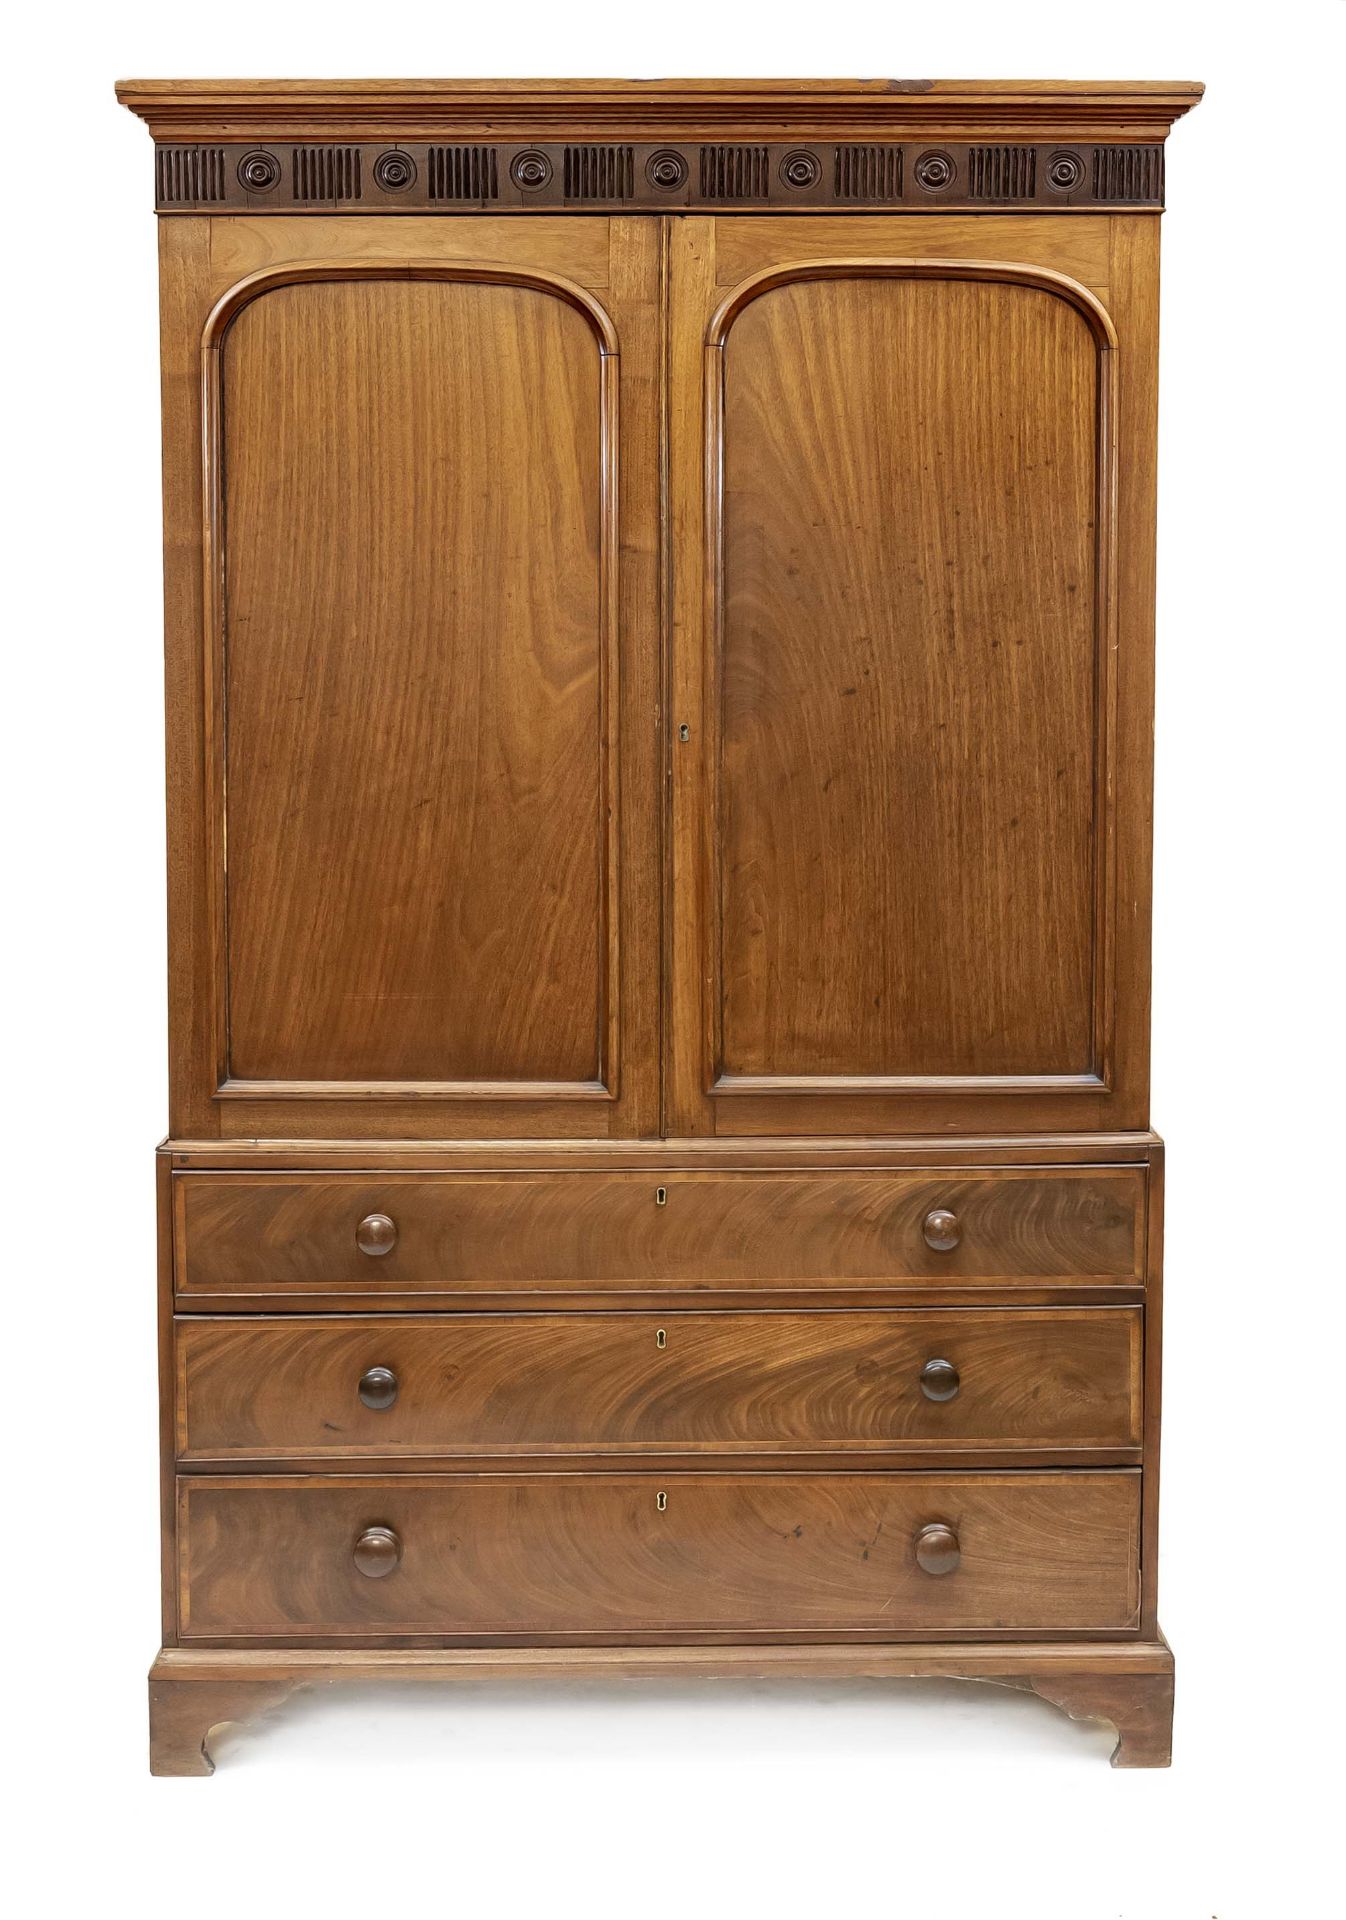 English mahogany cabinet